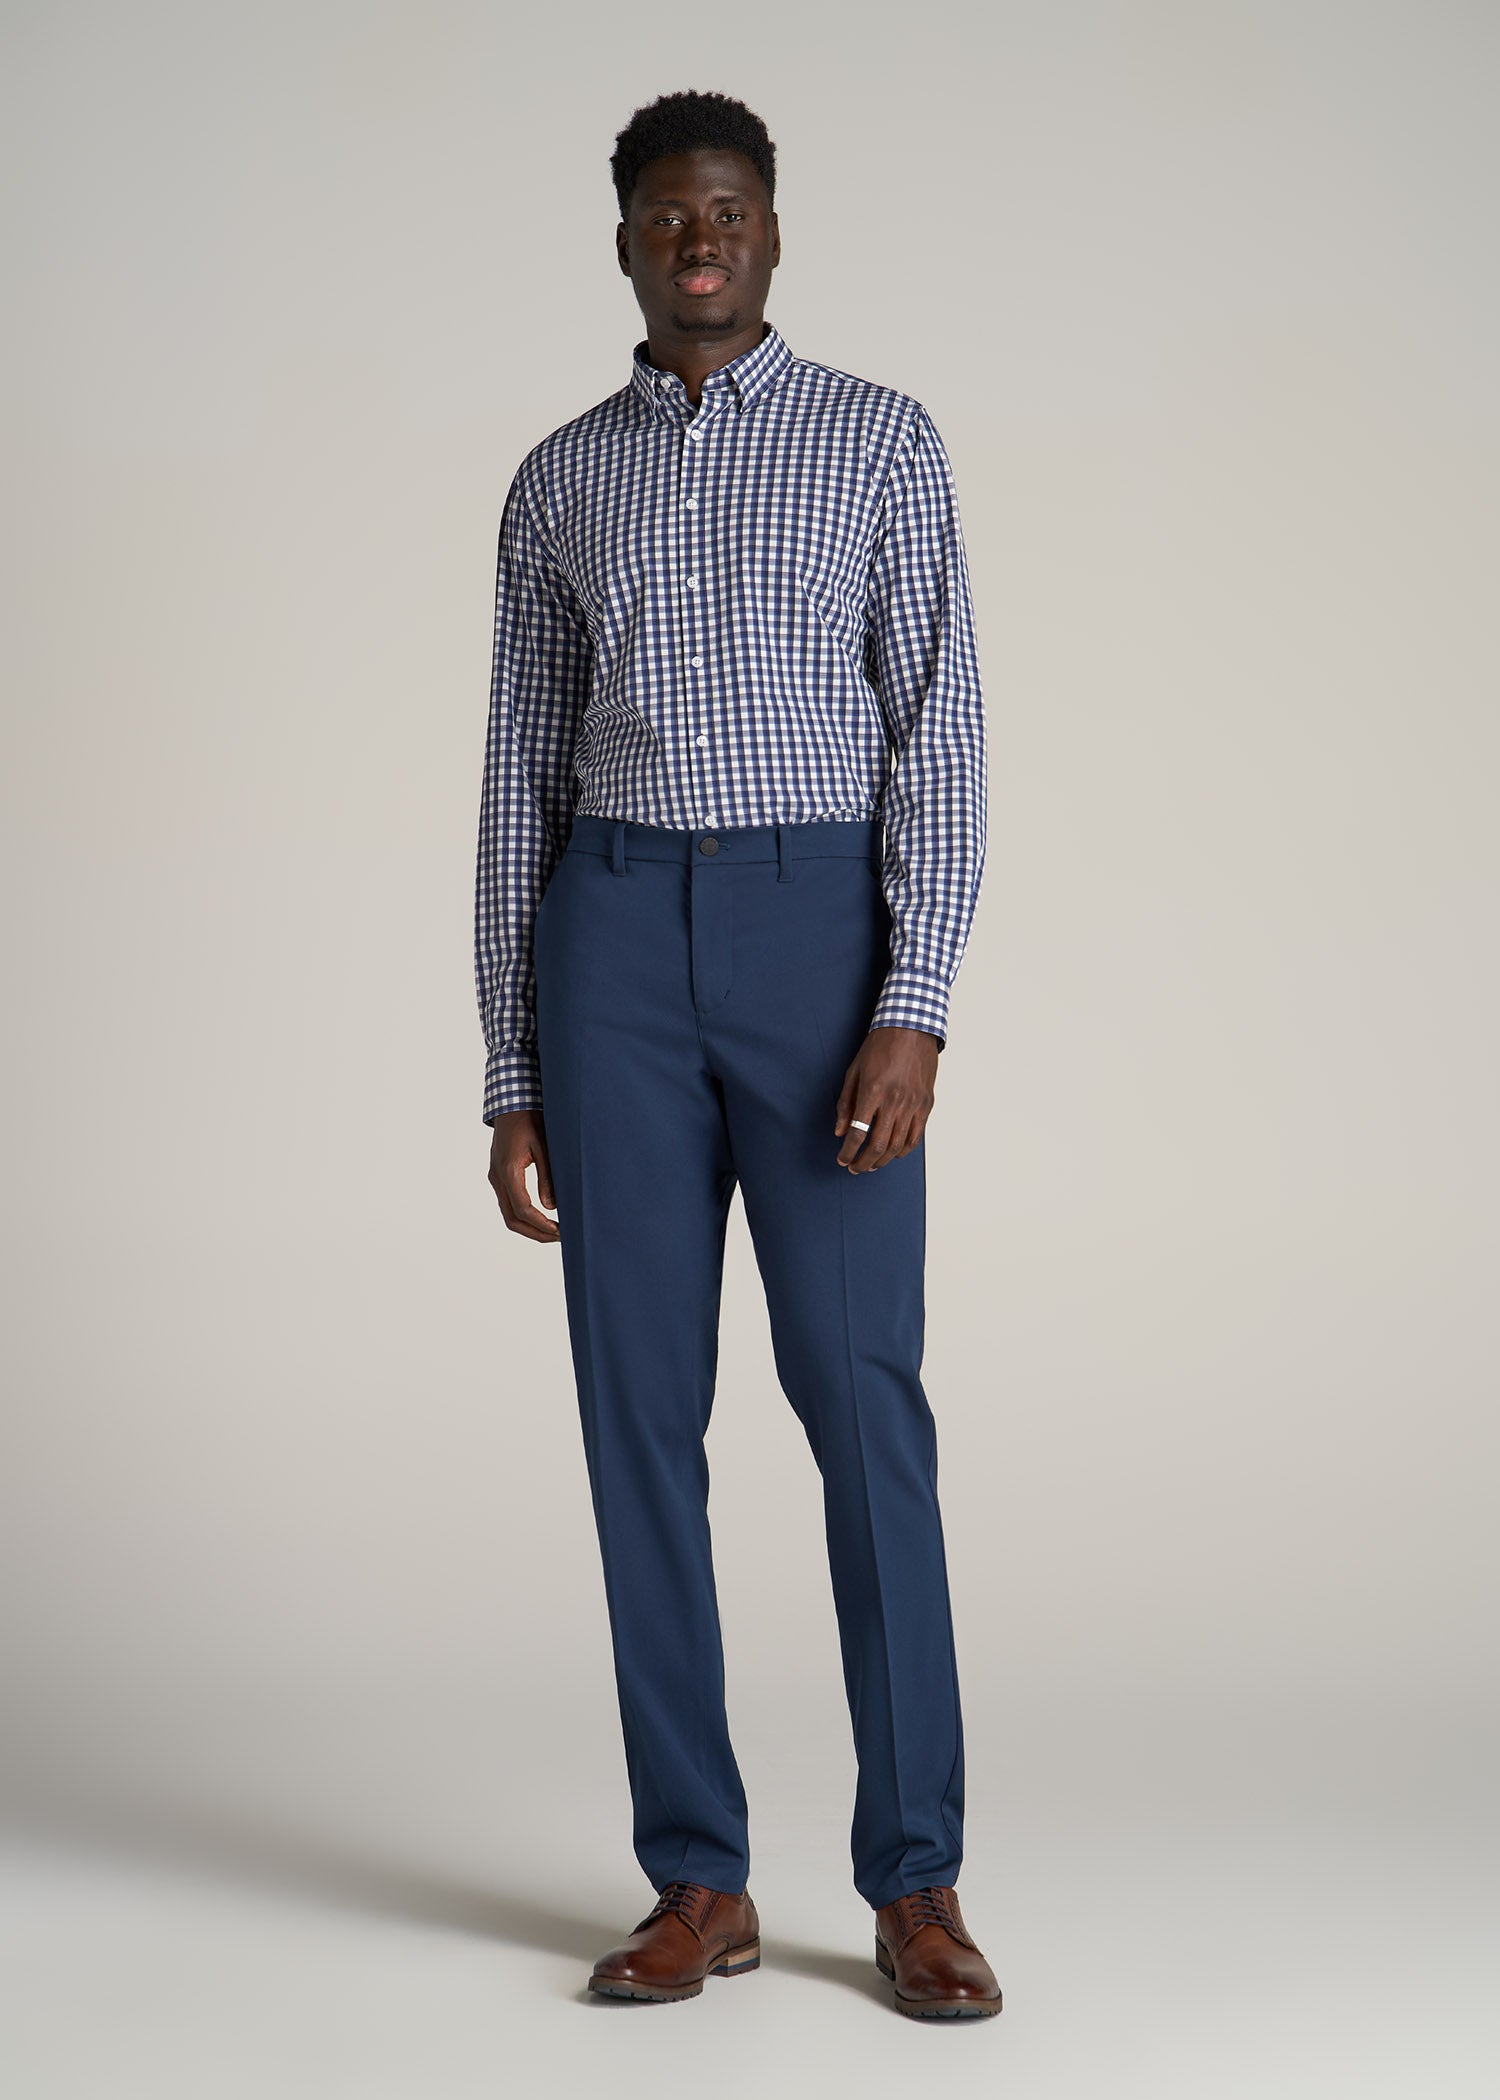 Murano Wardrobe Essentials Alex Slim Fit TekFit Waistband Suit Separates  Flat Front Dress Pants | Dillard's